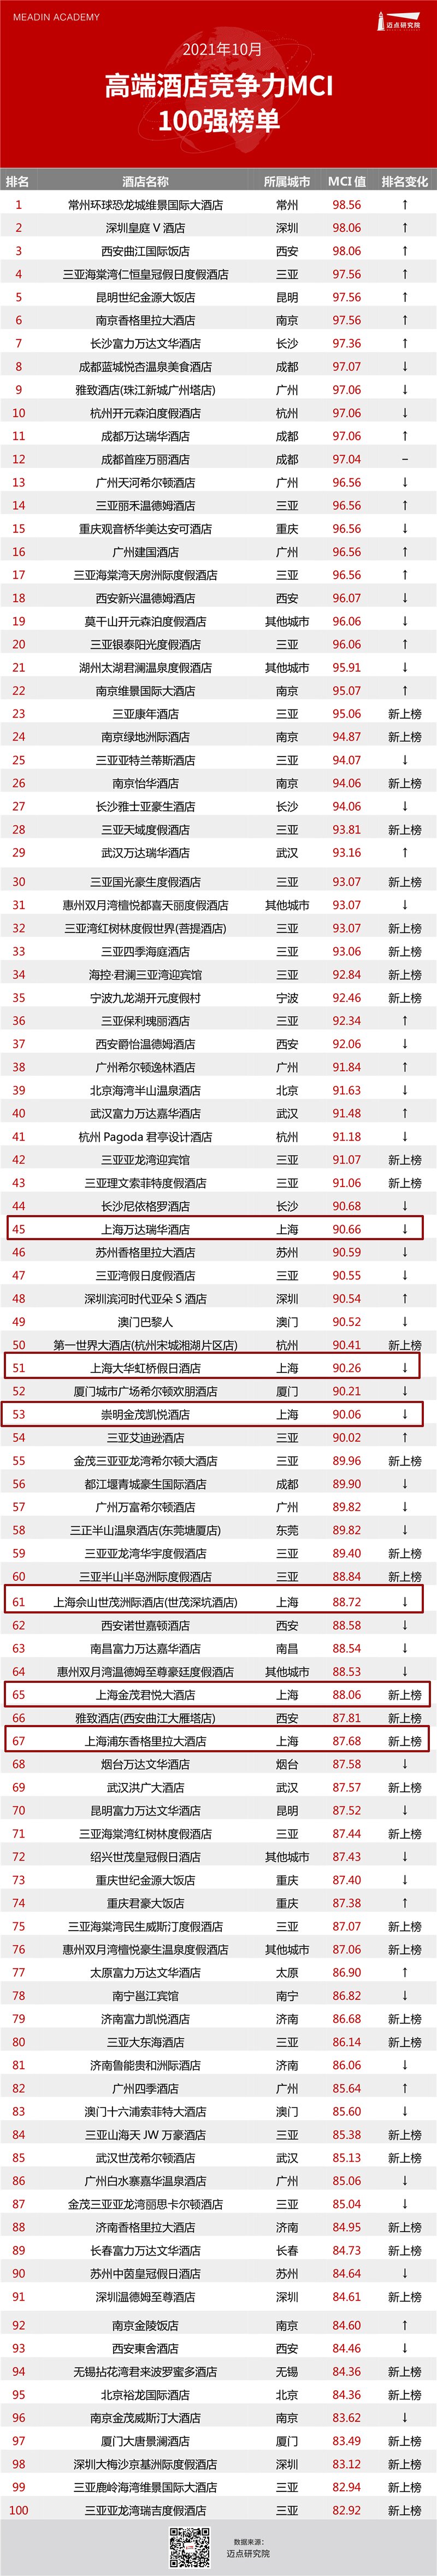 10月高端MCI 榜单 上海6家_proc.jpg